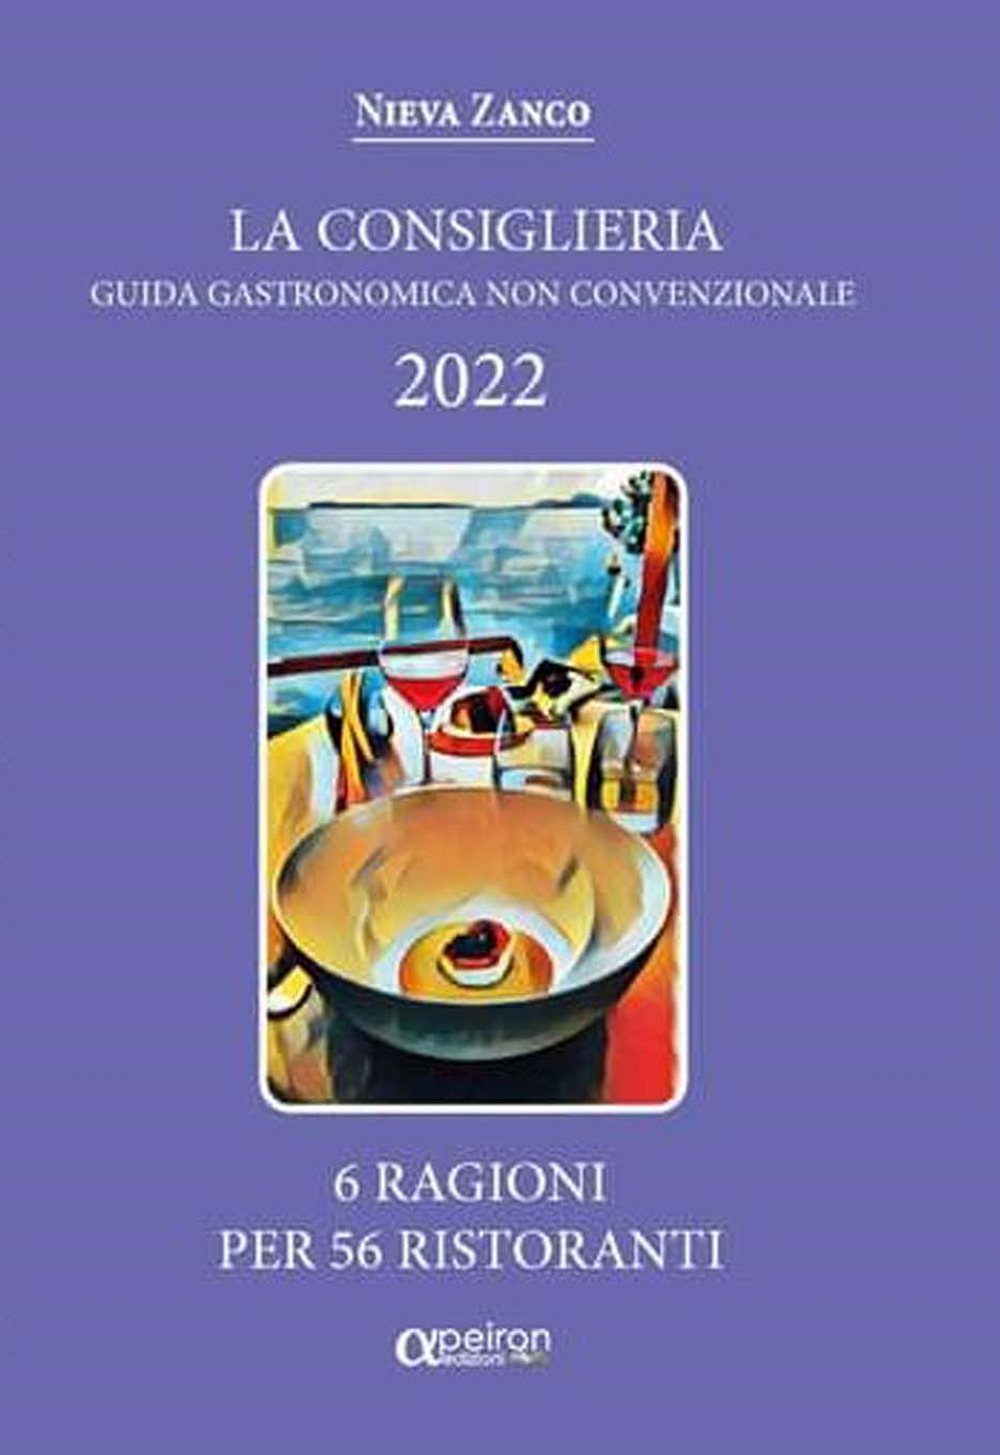 La Consiglieria 2022. Guida gastronomica non convenzionale. 6 ragioni per 56 ristoranti